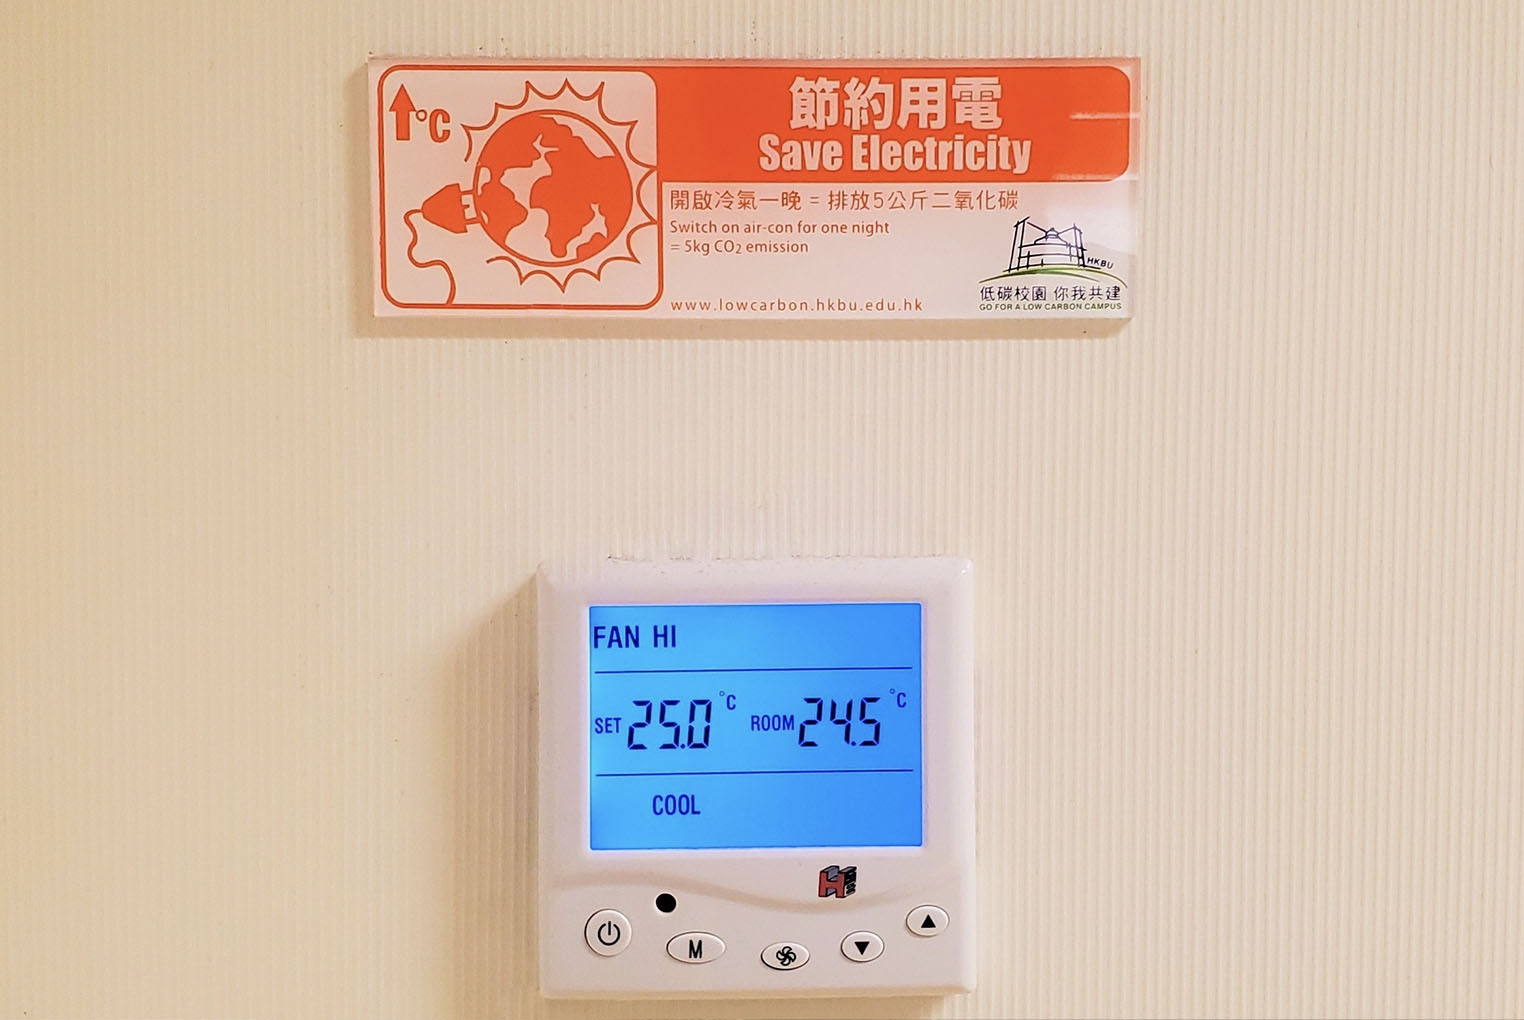 Indoor Temperature Setpoint at 24-26°C